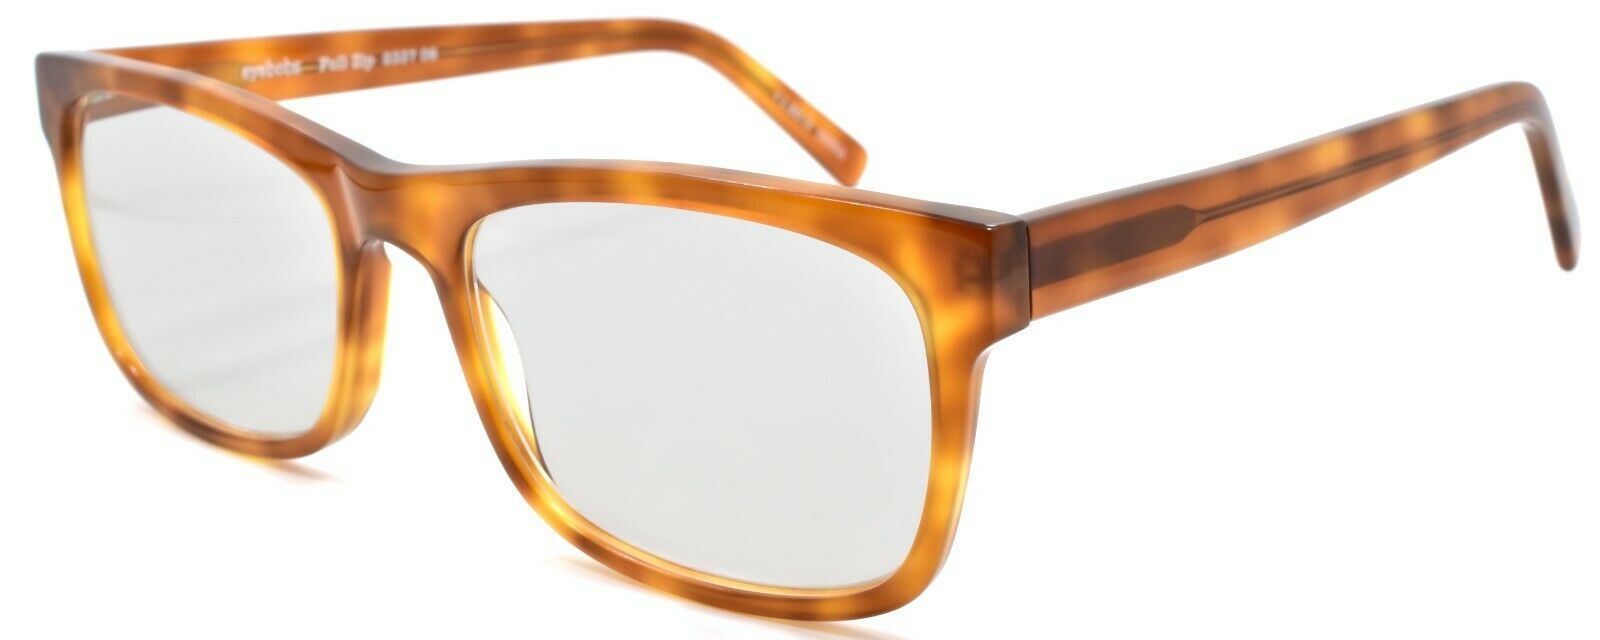 1-Eyebobs Full Zip 2337 06 Men's Reading Glasses Orange Tortoise +1.50-842754136495-IKSpecs